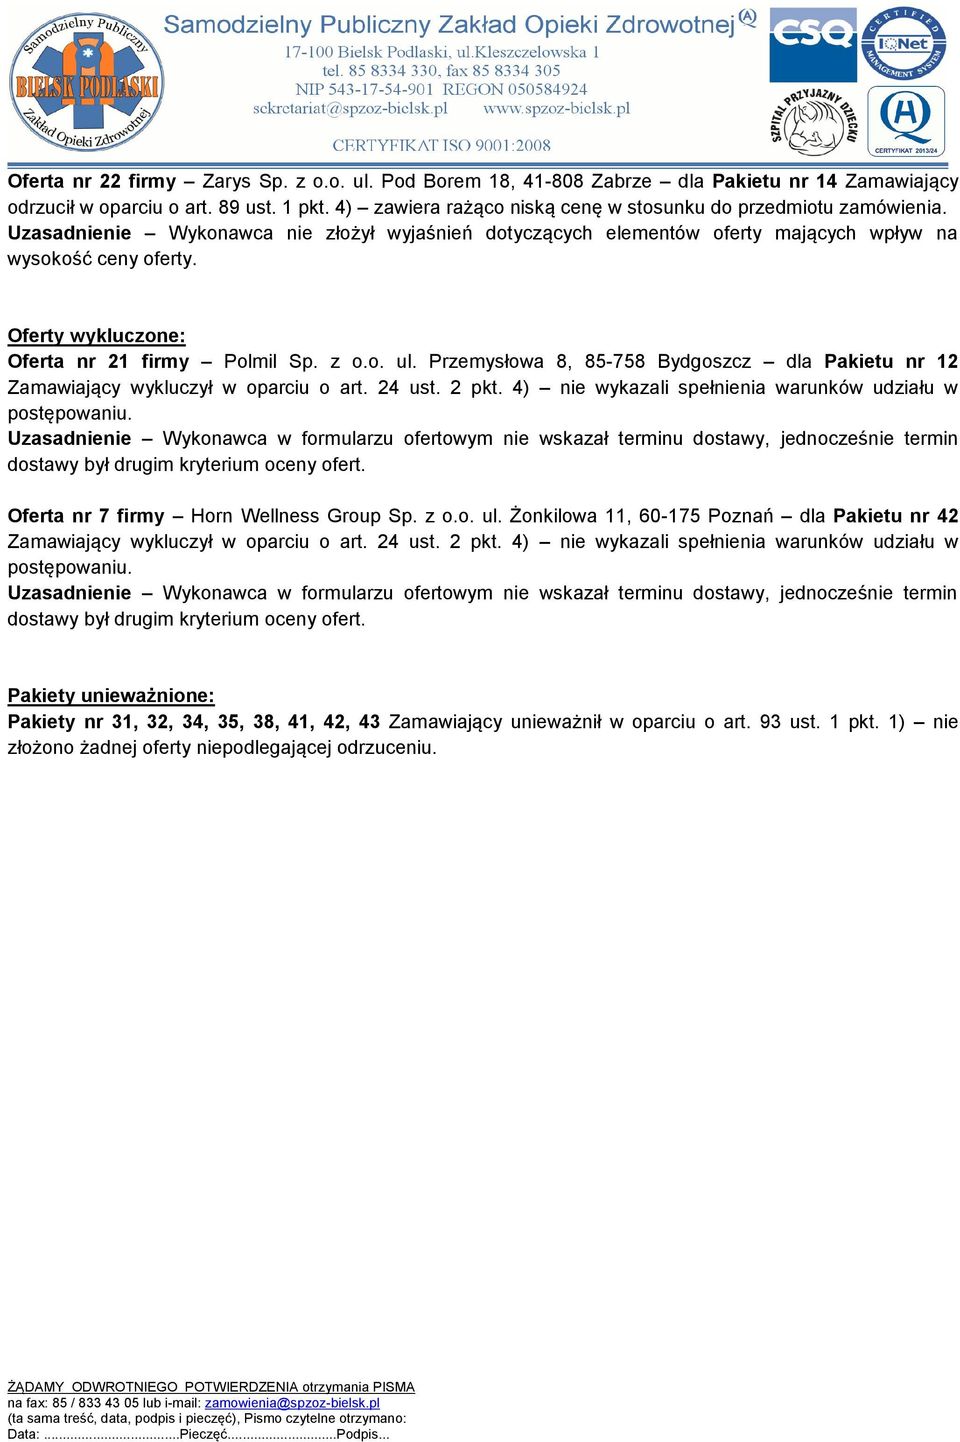 Oferty wykluczone: Oferta nr 21 firmy Polmil Sp. z o.o. ul. Przemysłowa 8, 85-758 Bydgoszcz dla Pakietu nr 12 Zamawiający wykluczył w oparciu o art. 24 ust. 2 pkt.